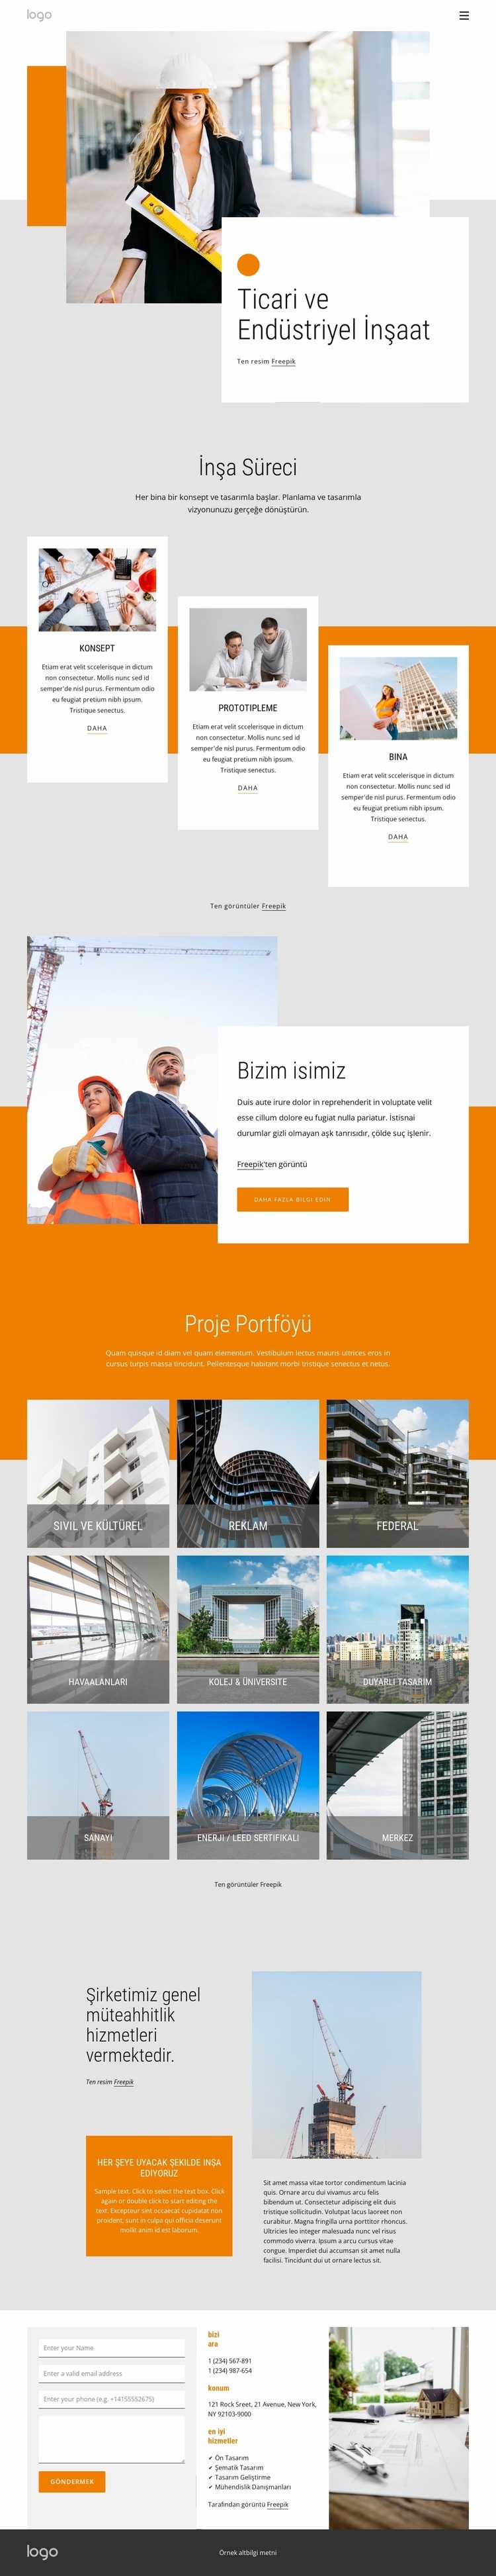 Ticari ve endüstriyel inşaat Açılış sayfası